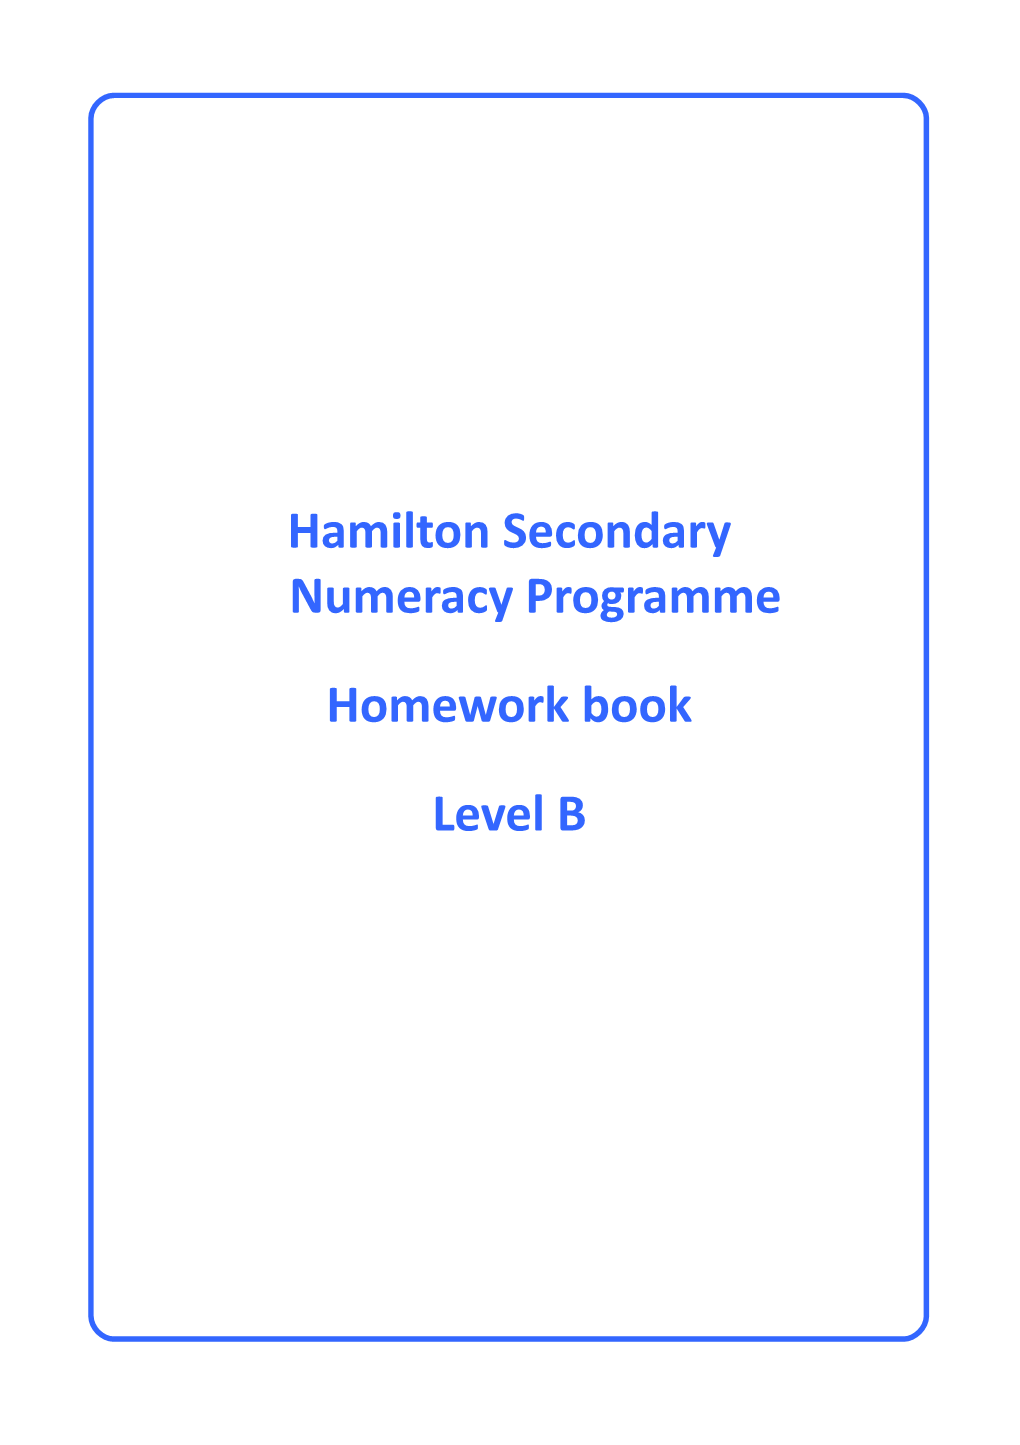 Hamilton Secondary Numeracy Programme